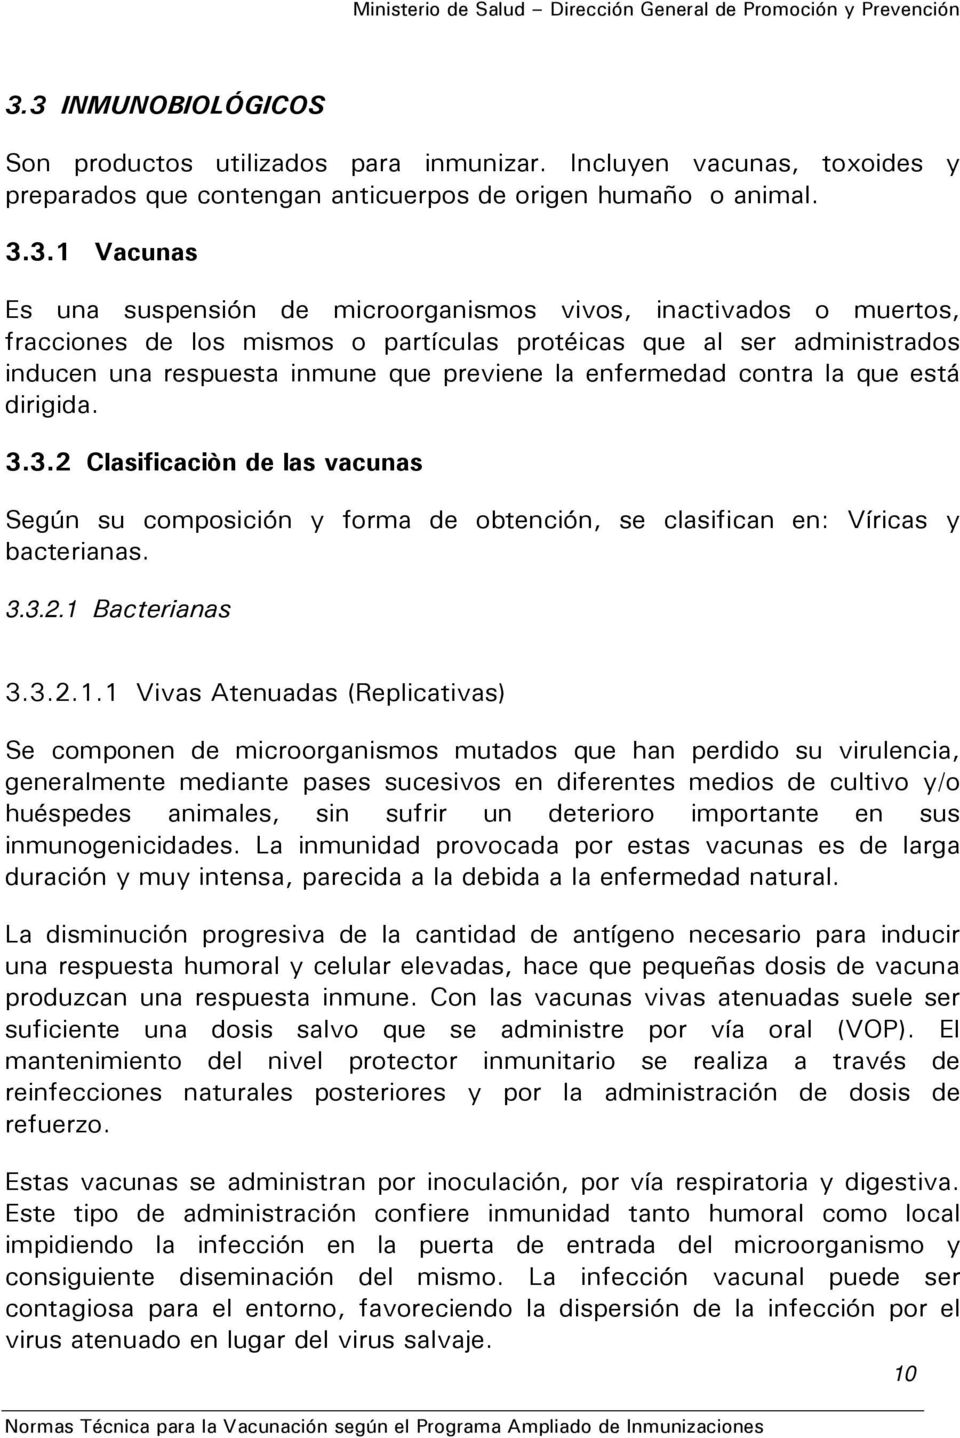 dirigida. 3.3.2 Clasificaciòn de las vacunas Según su composición y forma de obtención, se clasifican en: Víricas y bacterianas. 3.3.2.1 